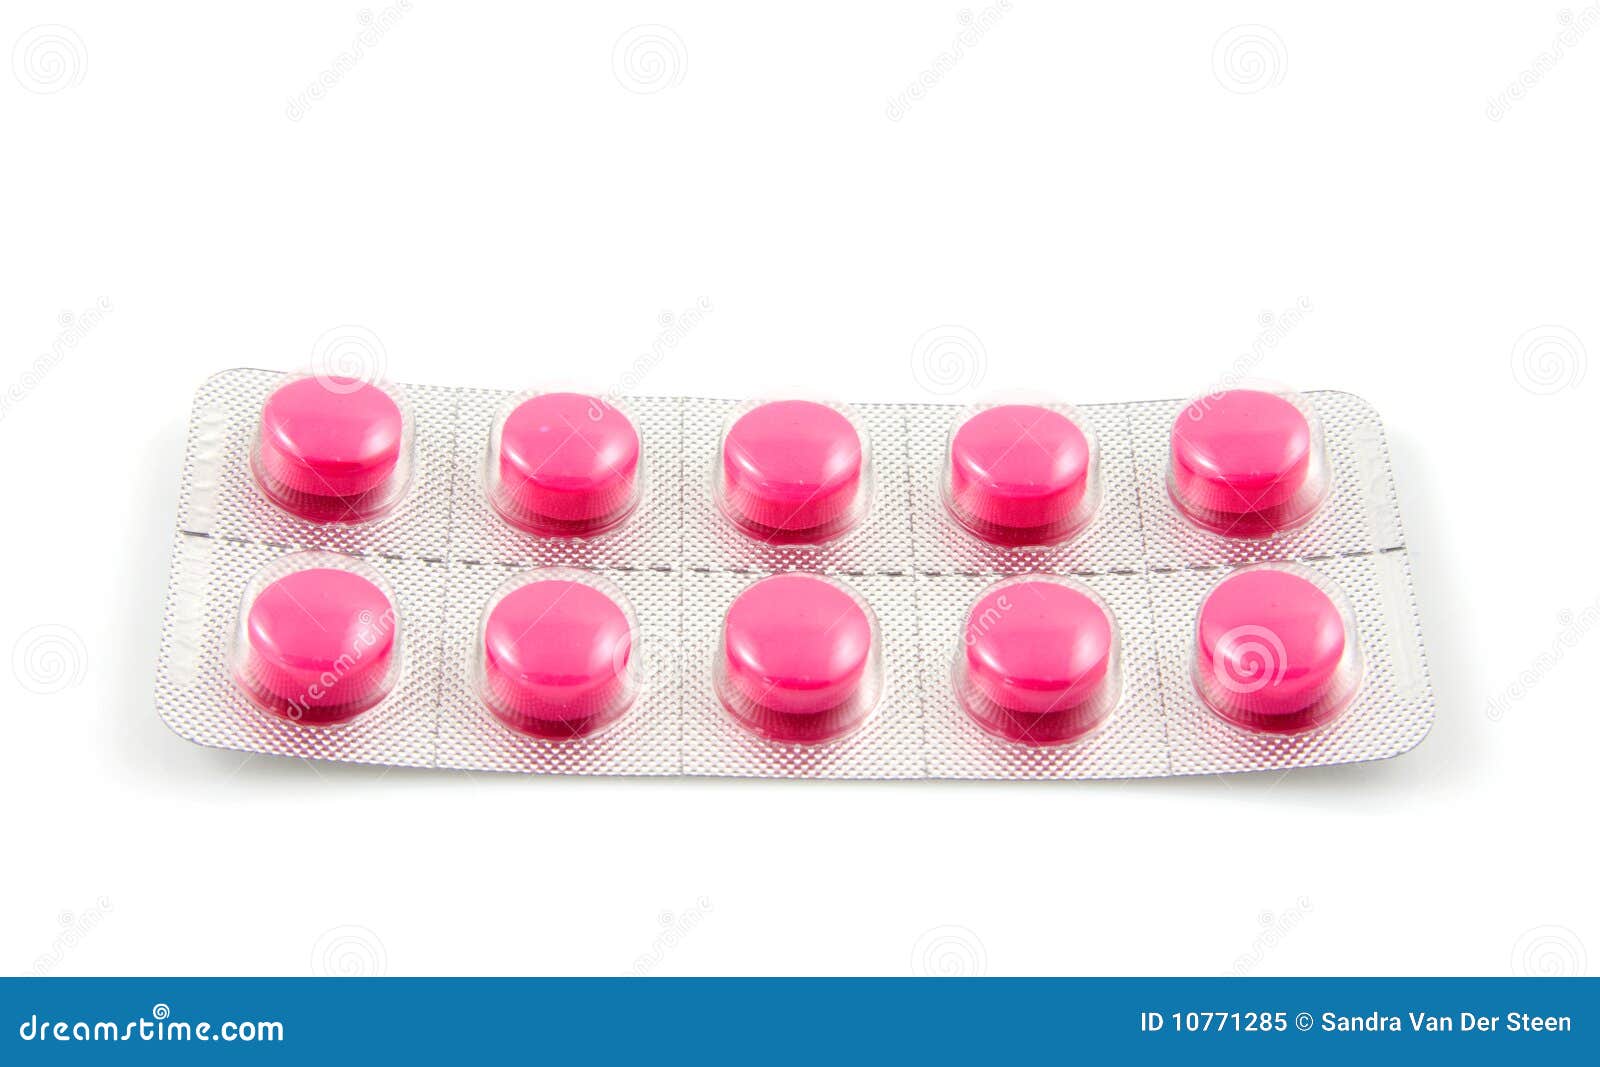 Розовые таблетки от температуры. Розовые таблетки. Лекарство в капсулах розового цвета. Розовая таблетка в блистерной упаковке. Микстура розового цвета.